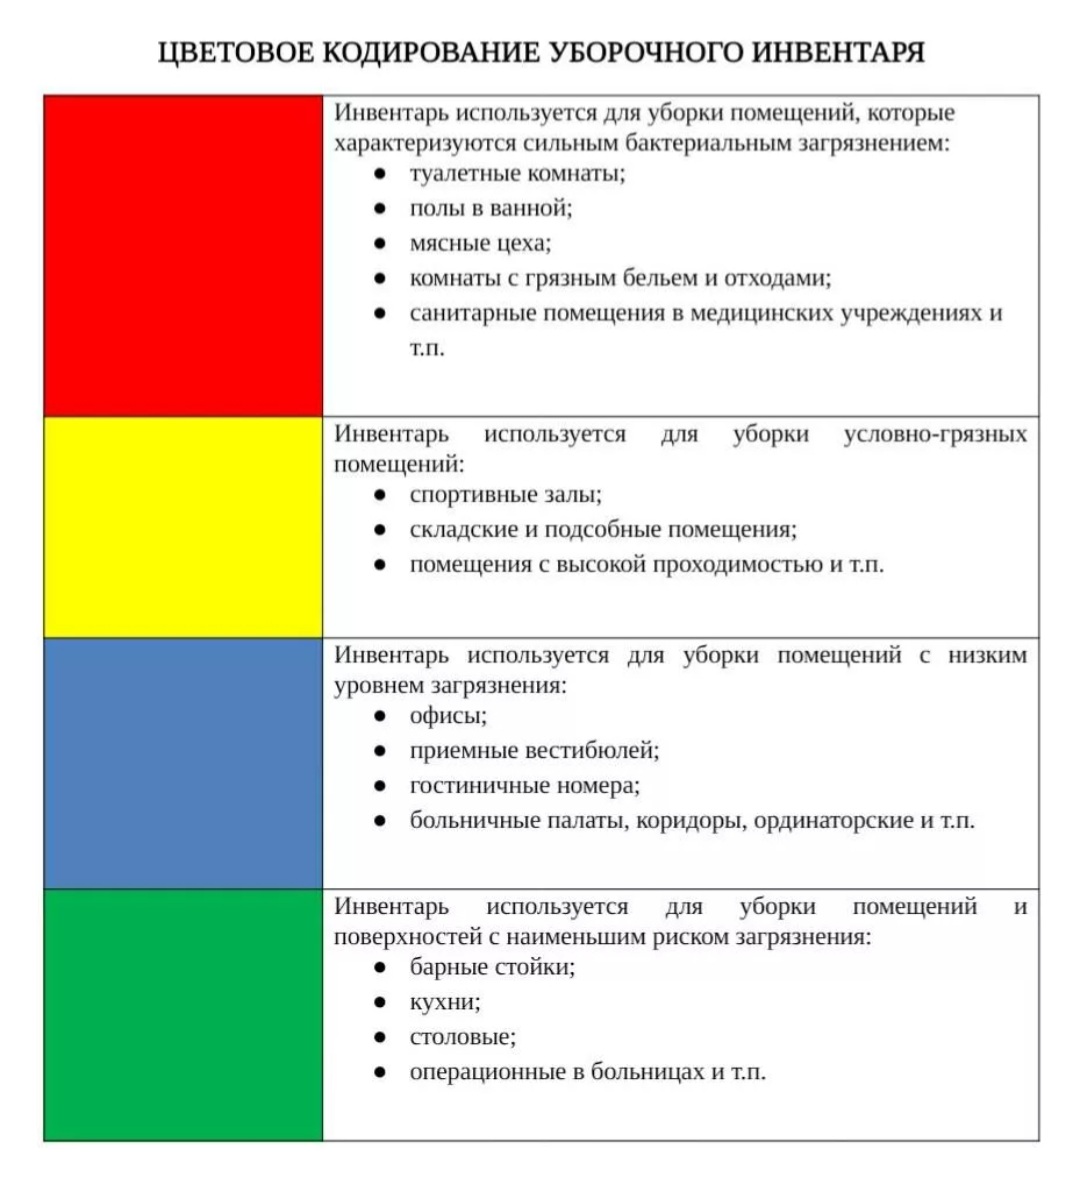 Цветовая маркировка мопов для уборки в лпу. Цвета и маркировочная информация